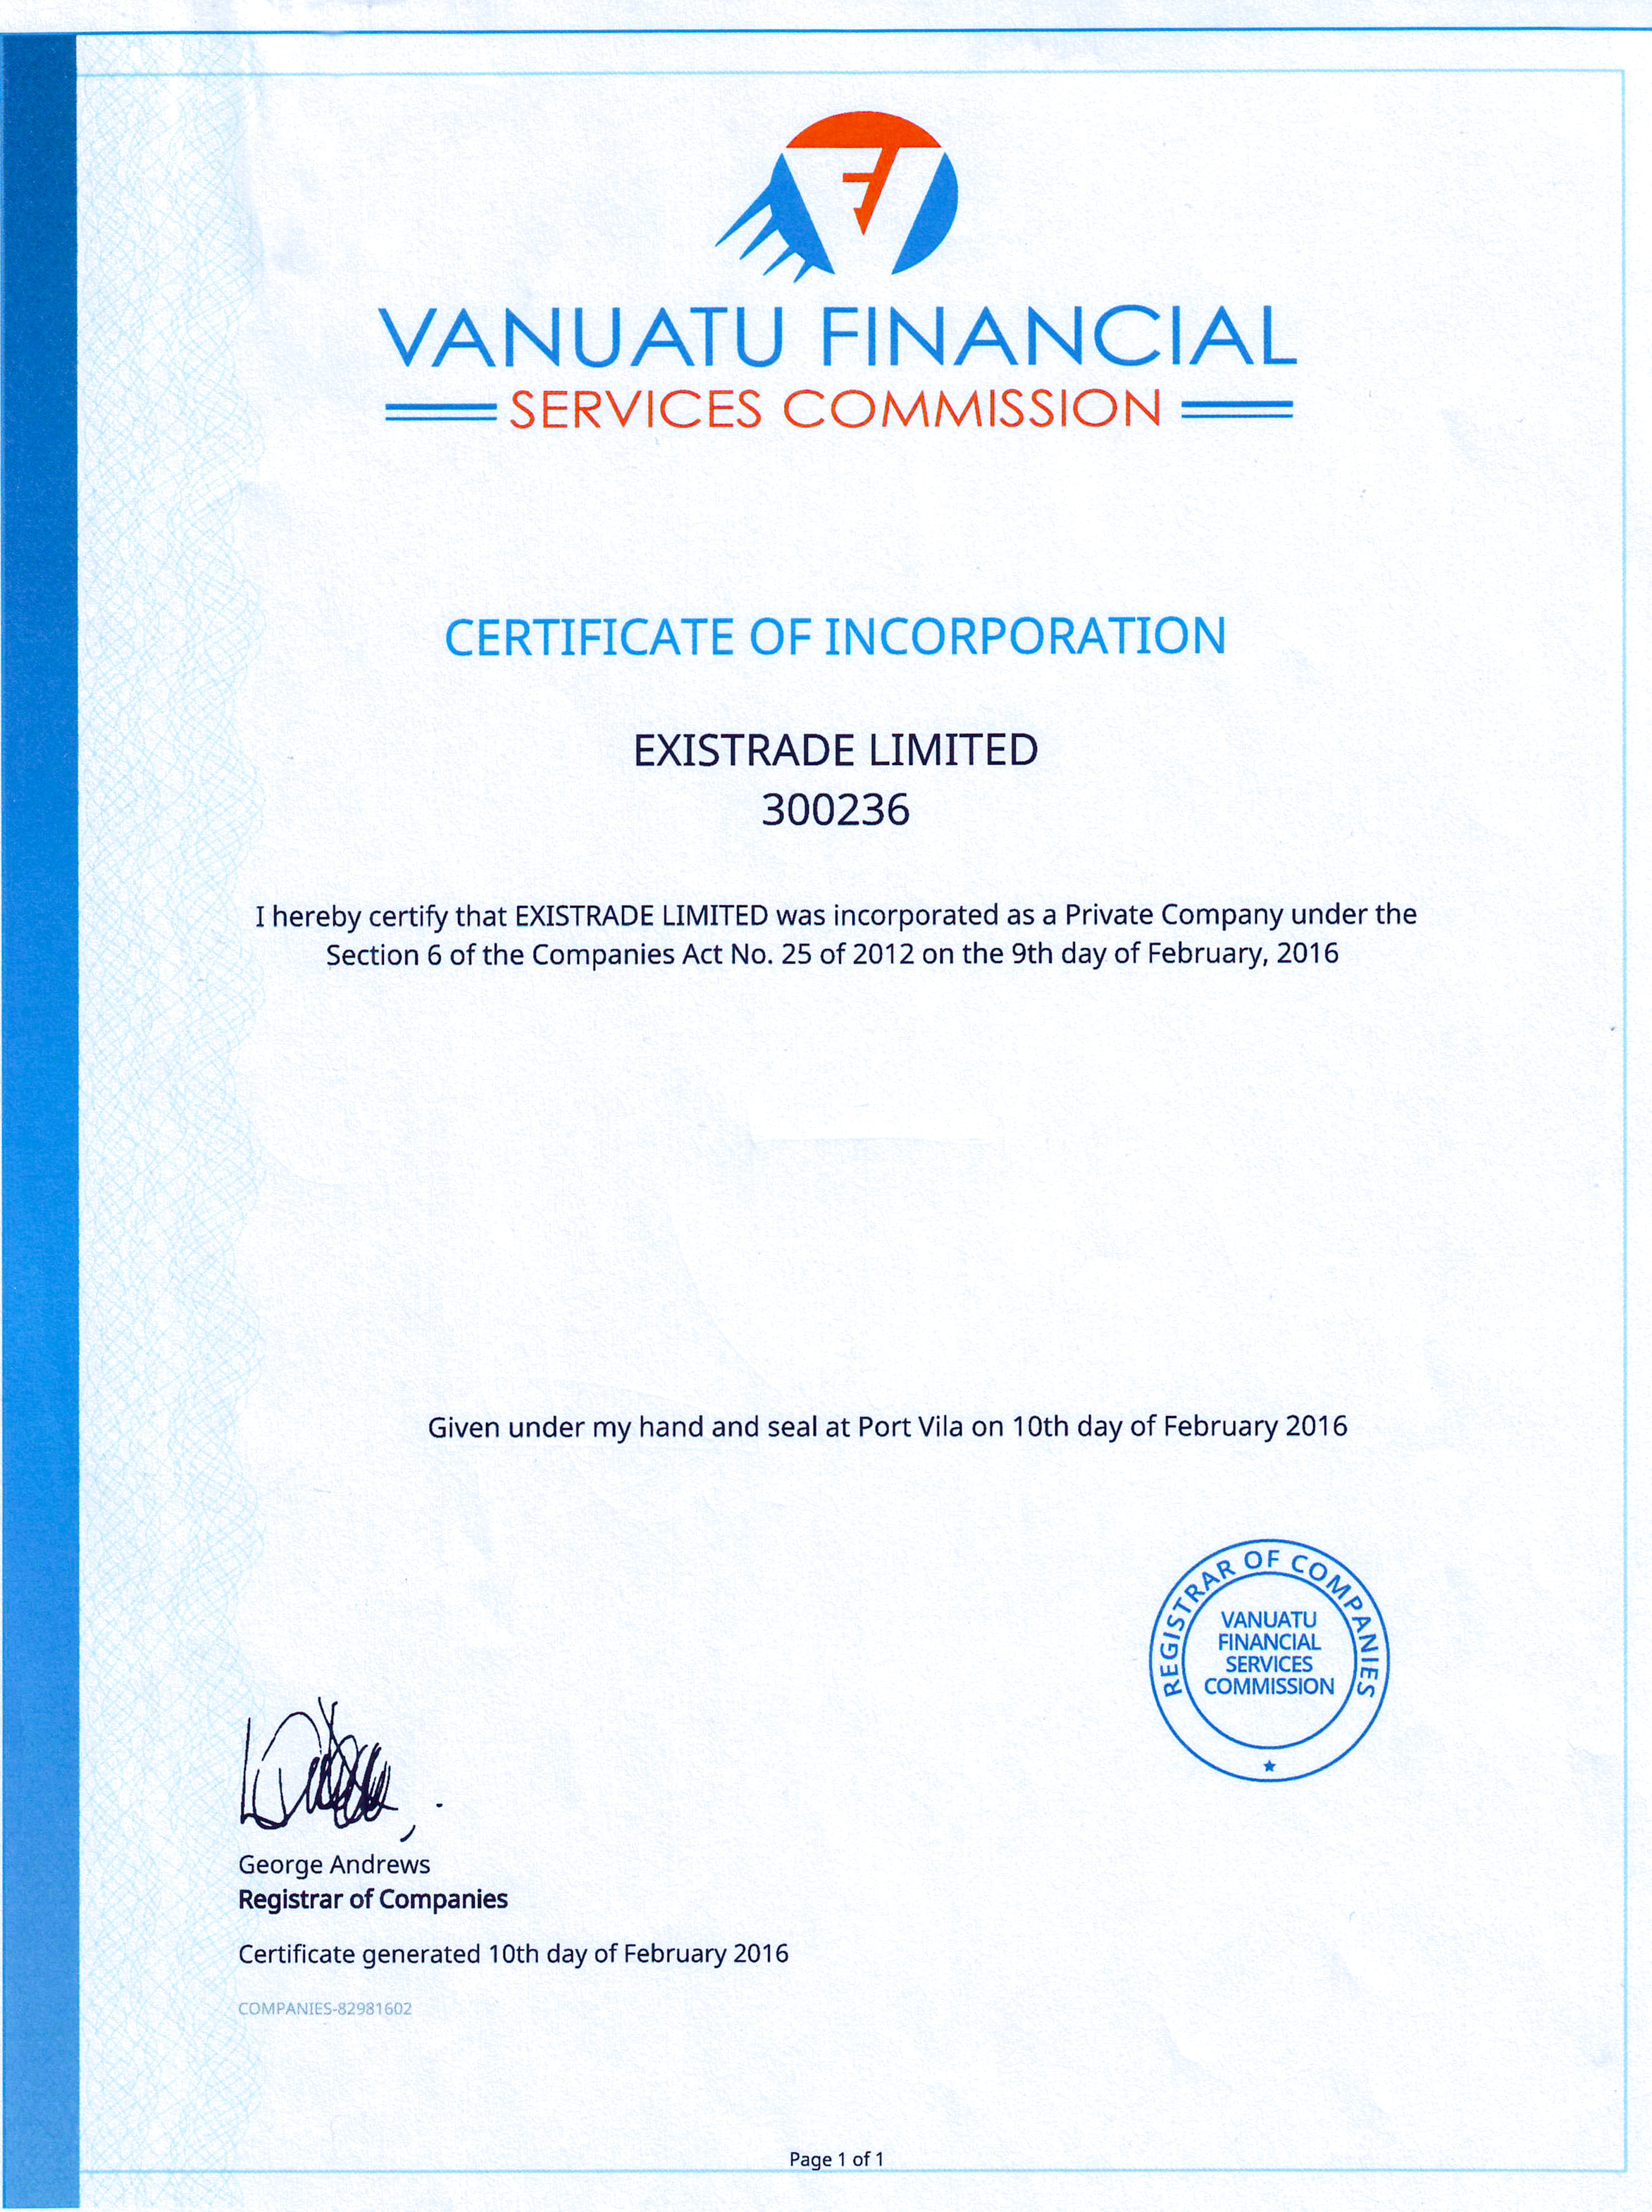 forex license of vanuatu